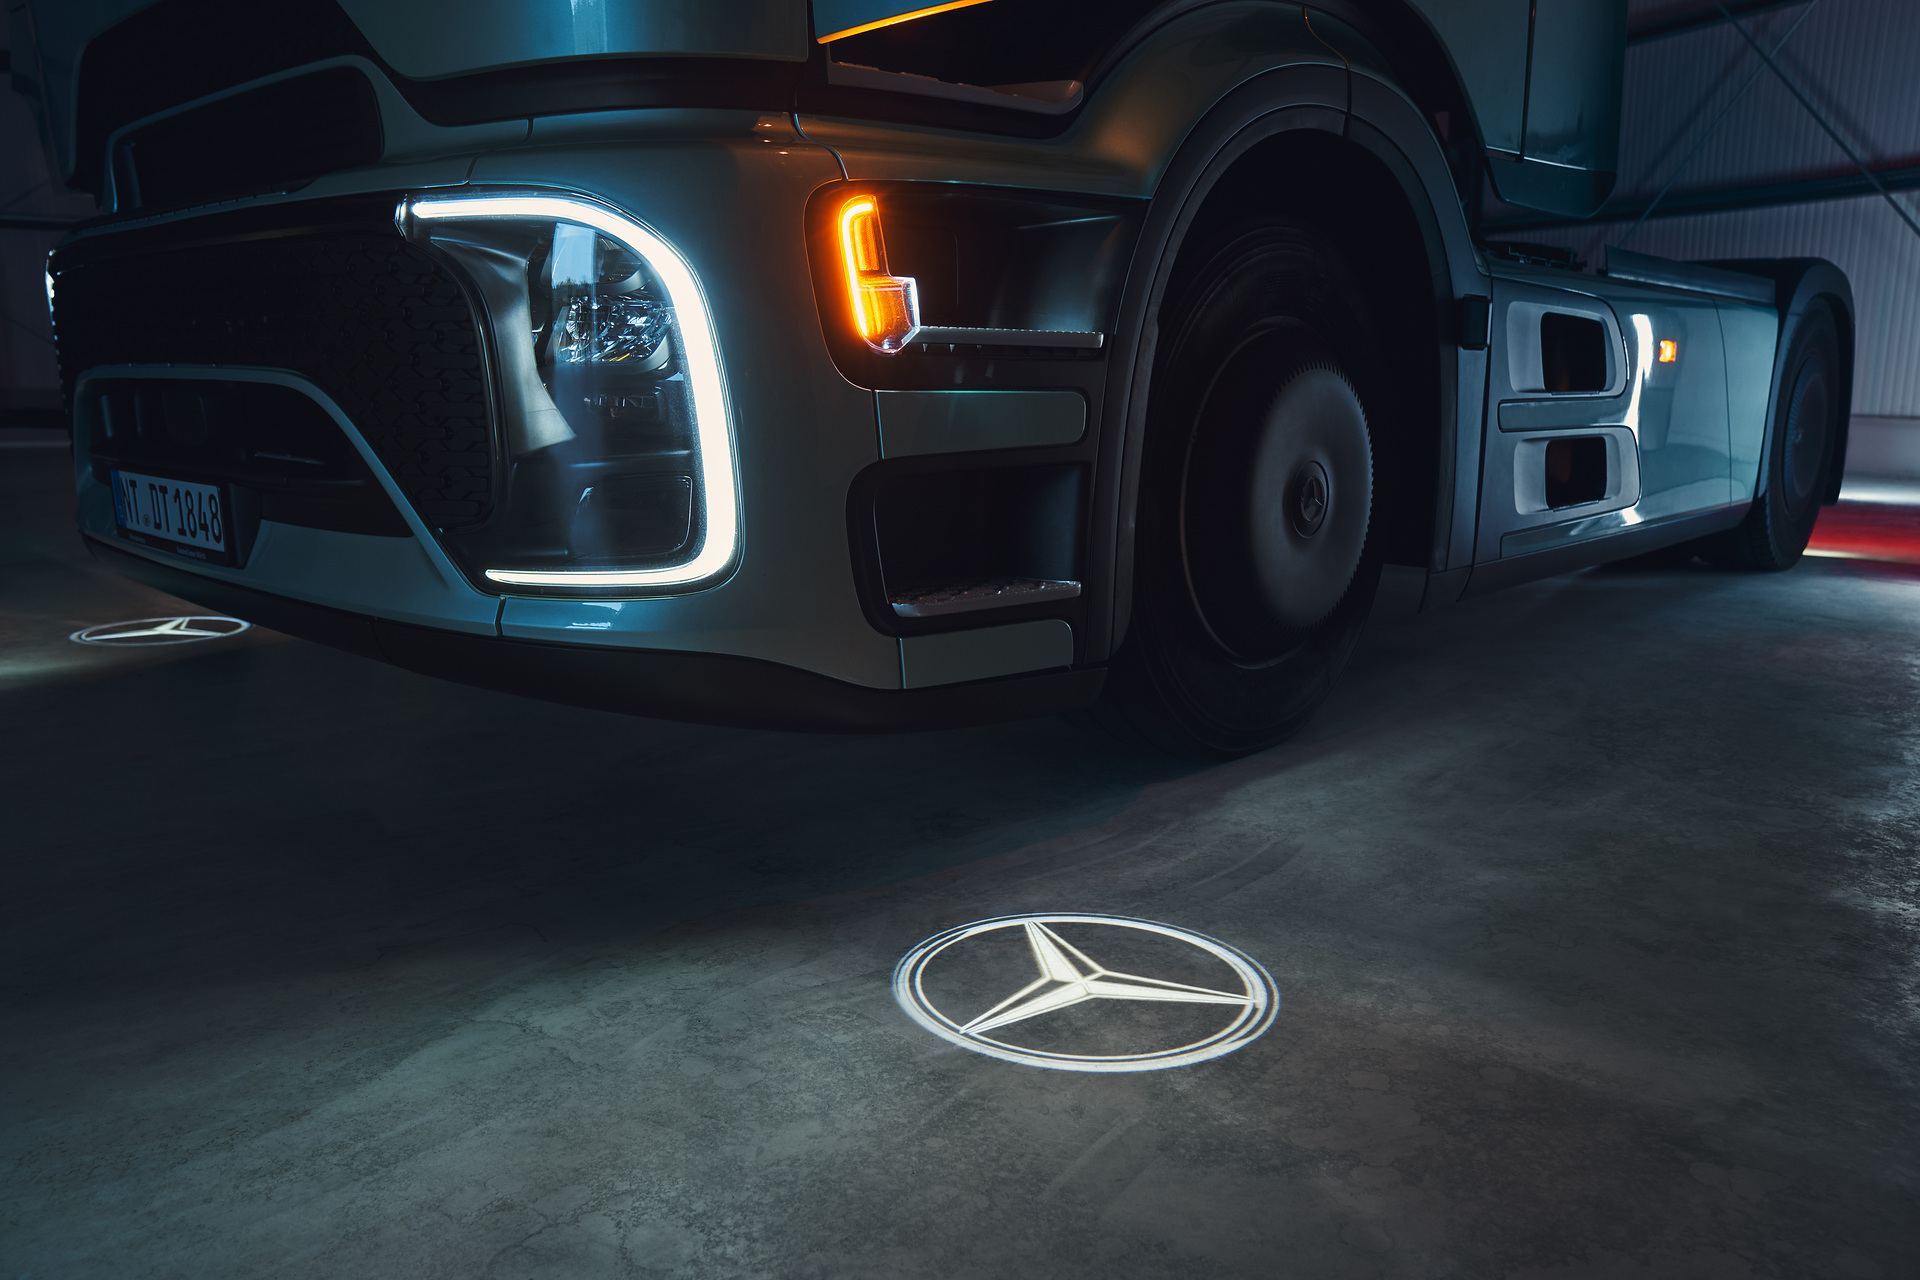 Noch mehr Effizienz auf der Straße: Der neue Actros L von Mercedes-Benz Trucks mit futuristischer ProCabin, noch besserer Aerodynamik und innovativen Assistenzsystemen